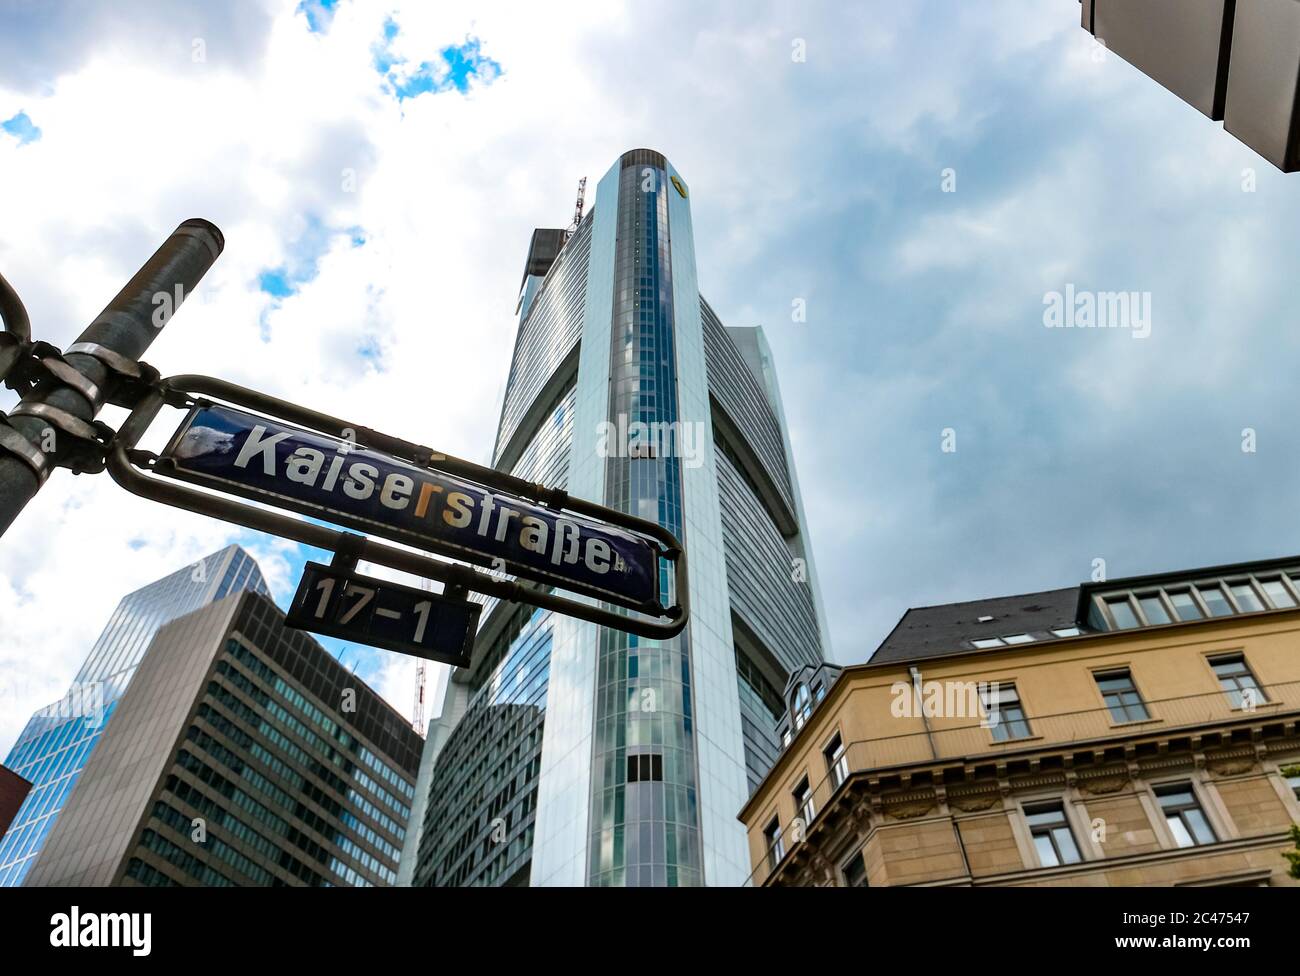 Cartel de la calle Kaiserstraße y torre Commerzbank del arquitecto Norman Foster, edificio más alto de la Unión Europea (2020). Frankfurt am Main, Alemania. Foto de stock